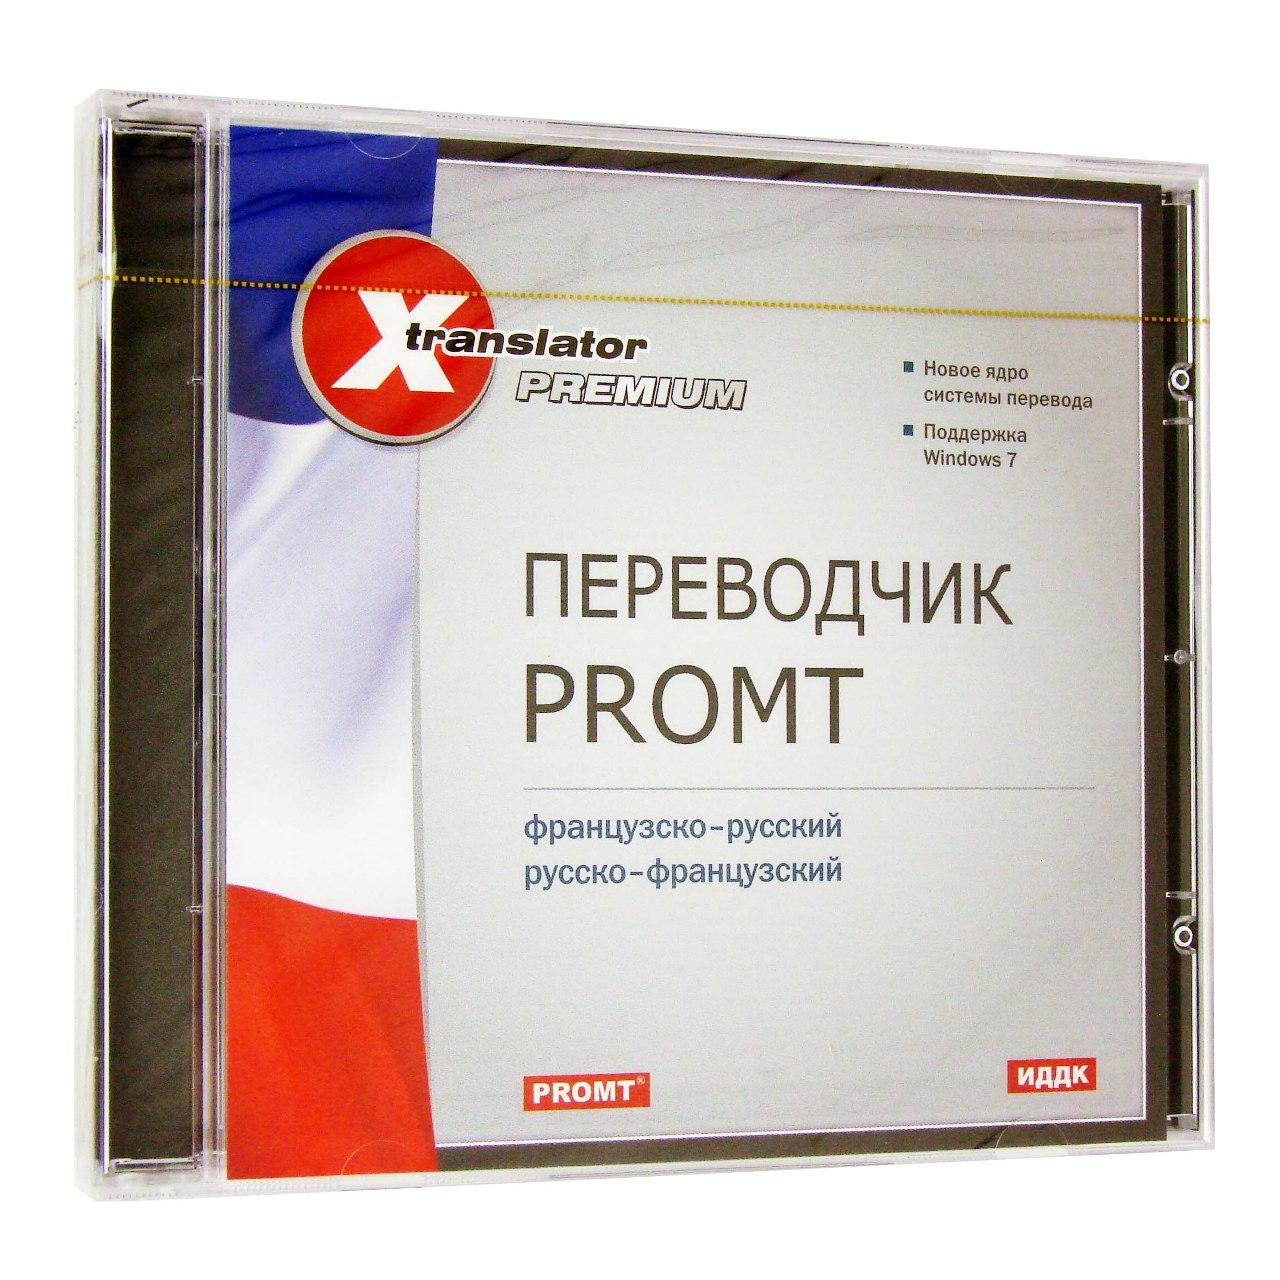 Компьютерный компакт-диск X-Translator Premium. Переводчик Promt: Французско-русский, русско-французский (ПК), фирма "ИДДК", 1CD